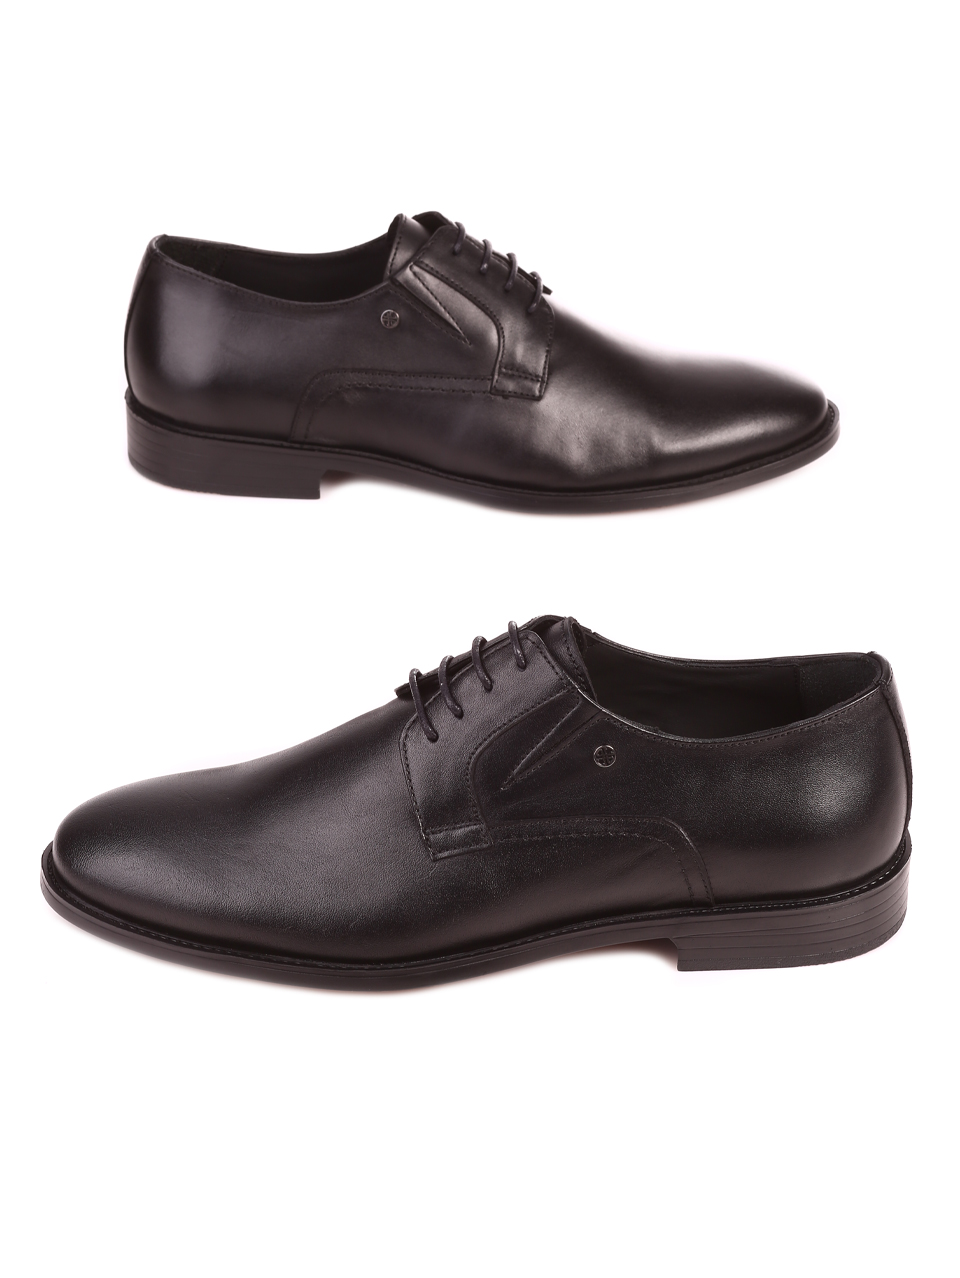 Елегантни мъжки обувки от естествена кожа в черно 153-5844 black S-1